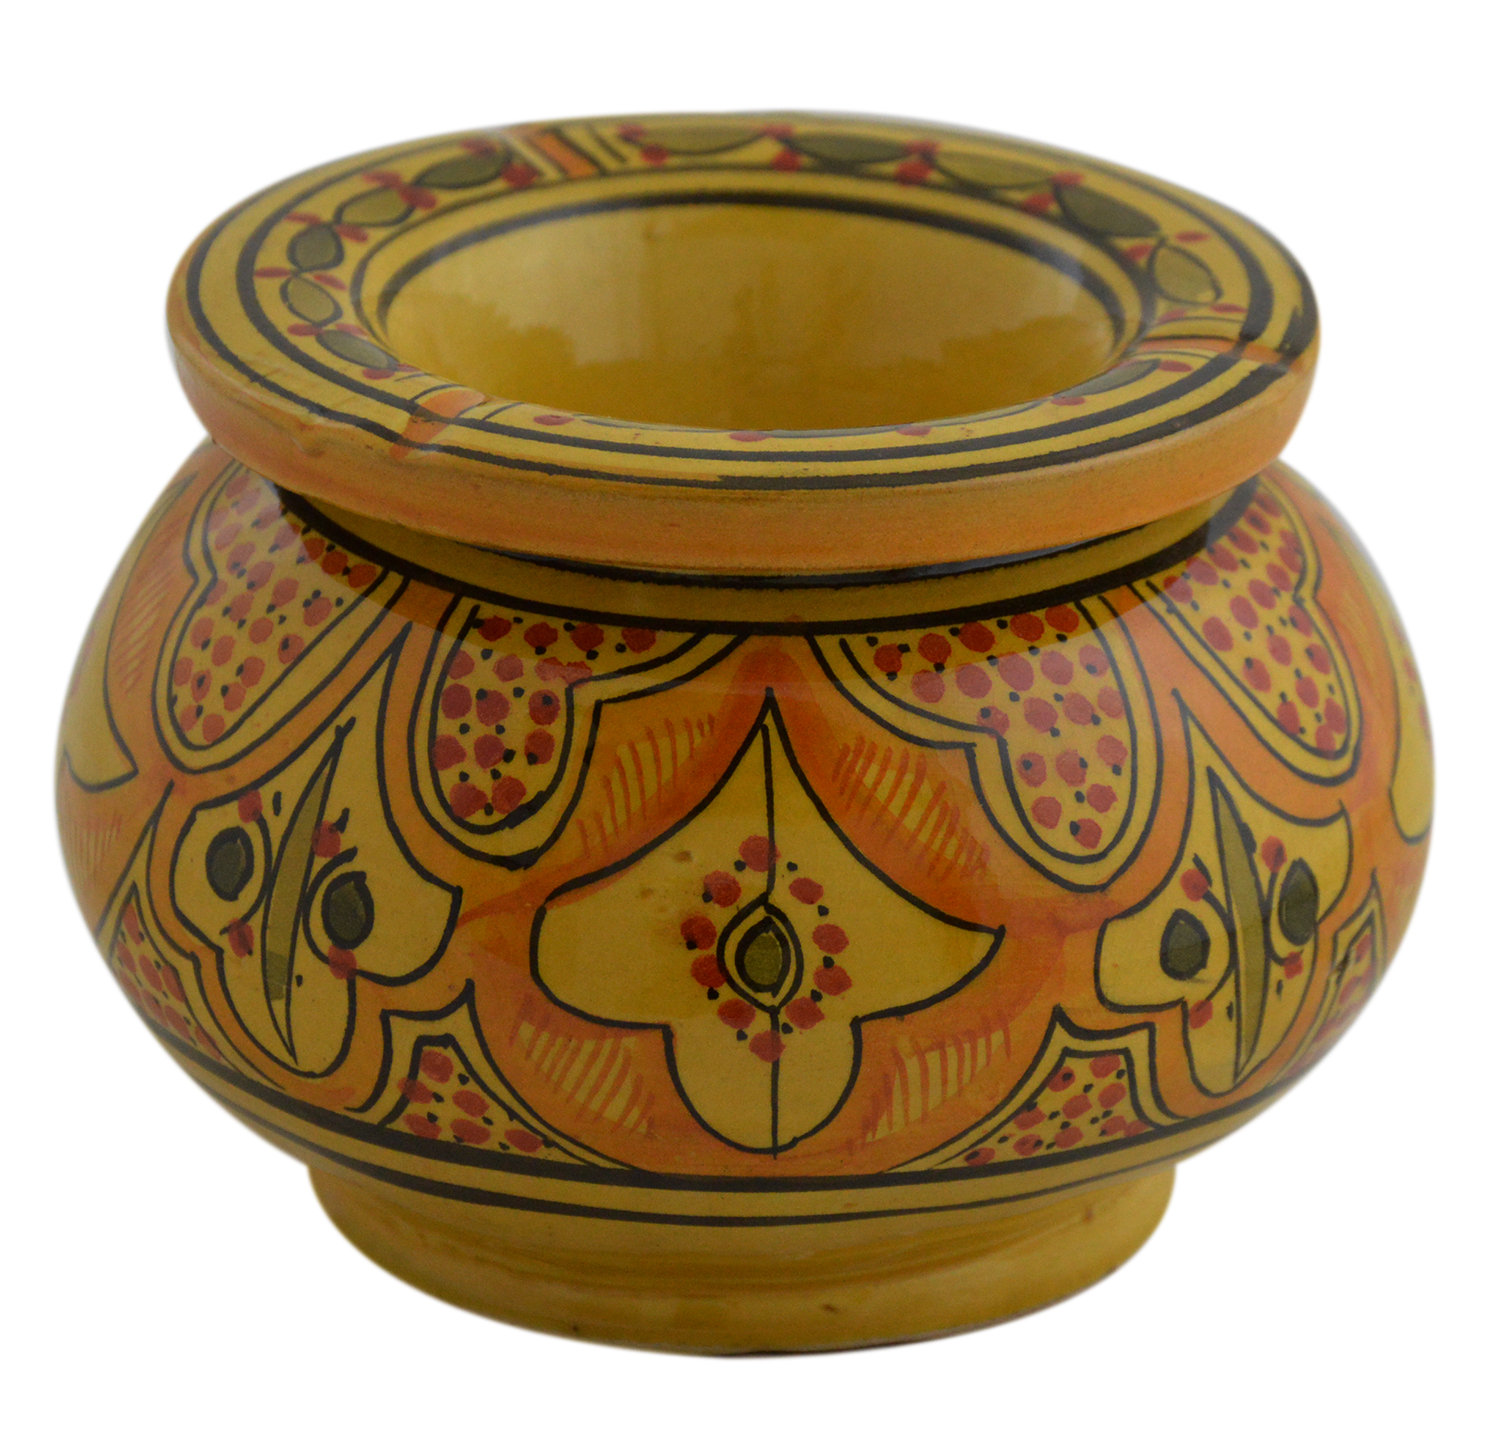 Moroccan ceramic ashtray.